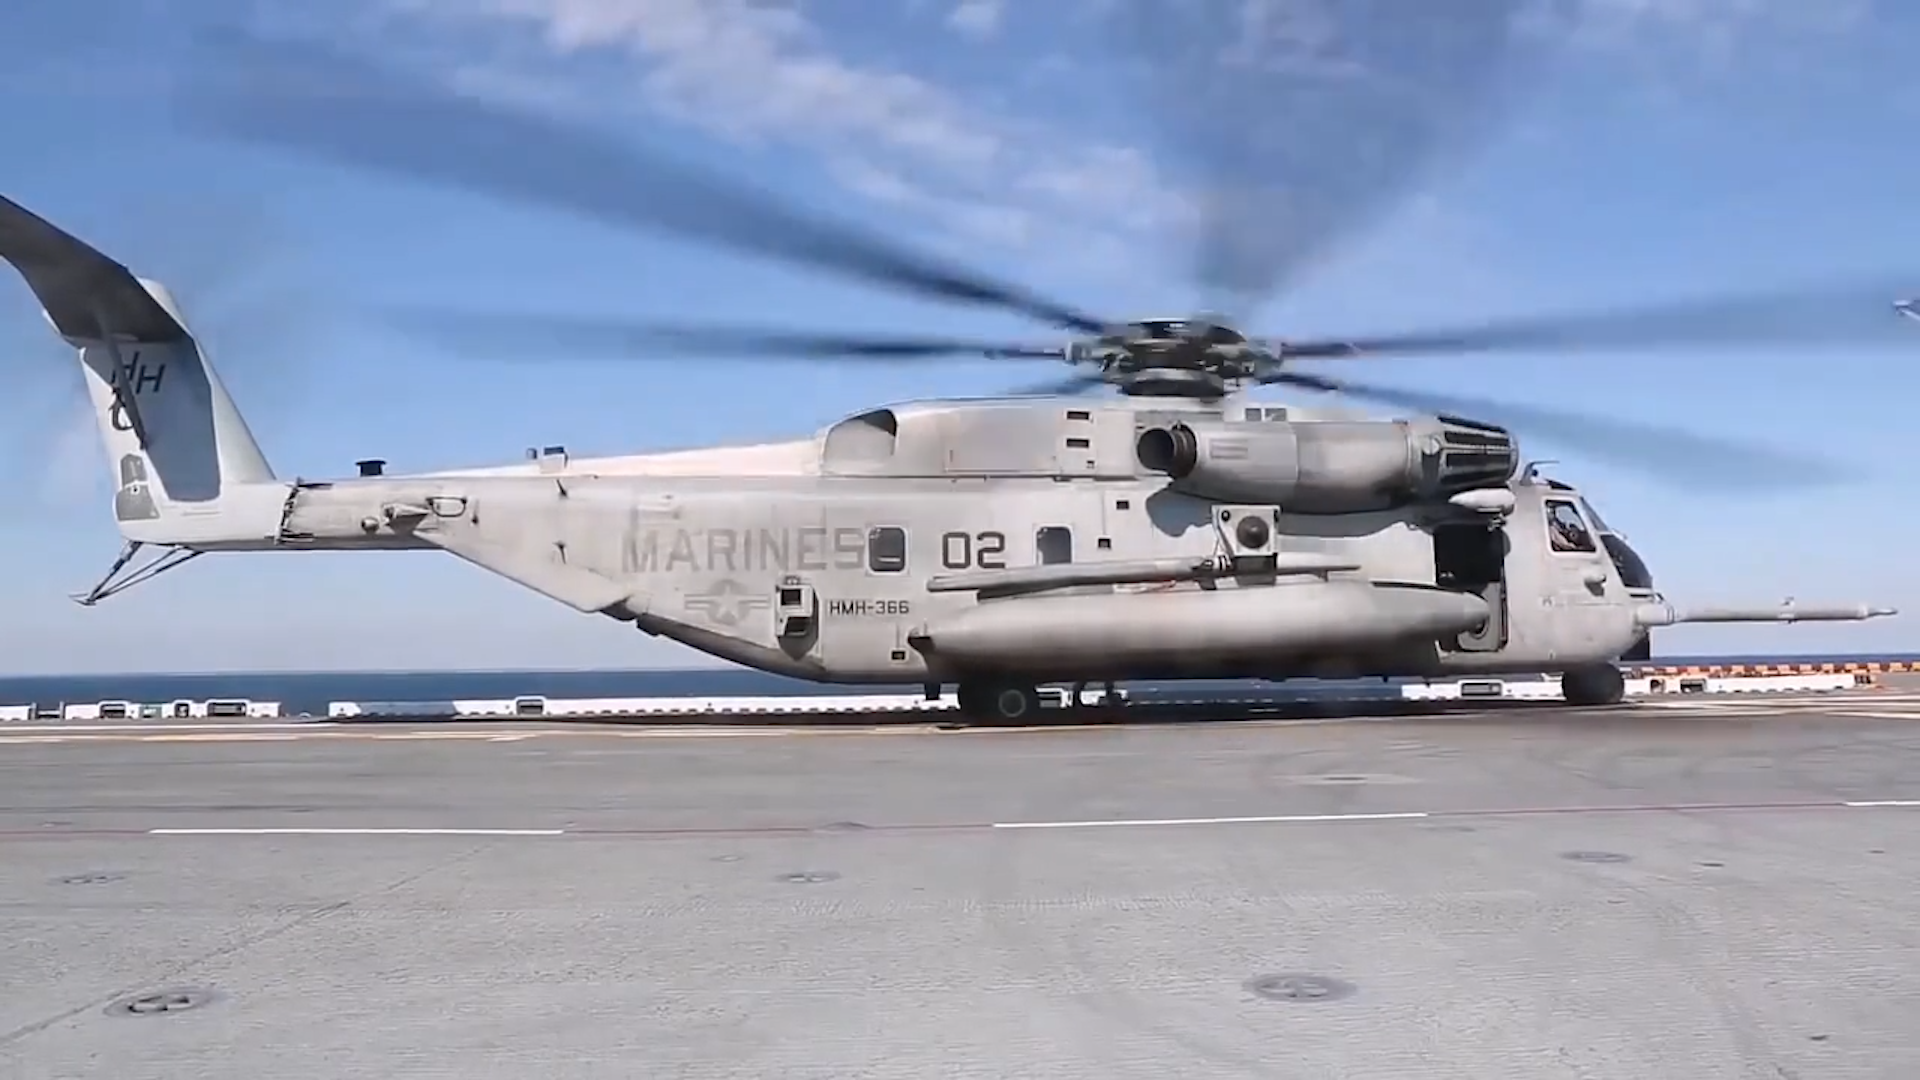 美军ch-53e超级种马直升机,在两栖攻击舰上进行起降作业!